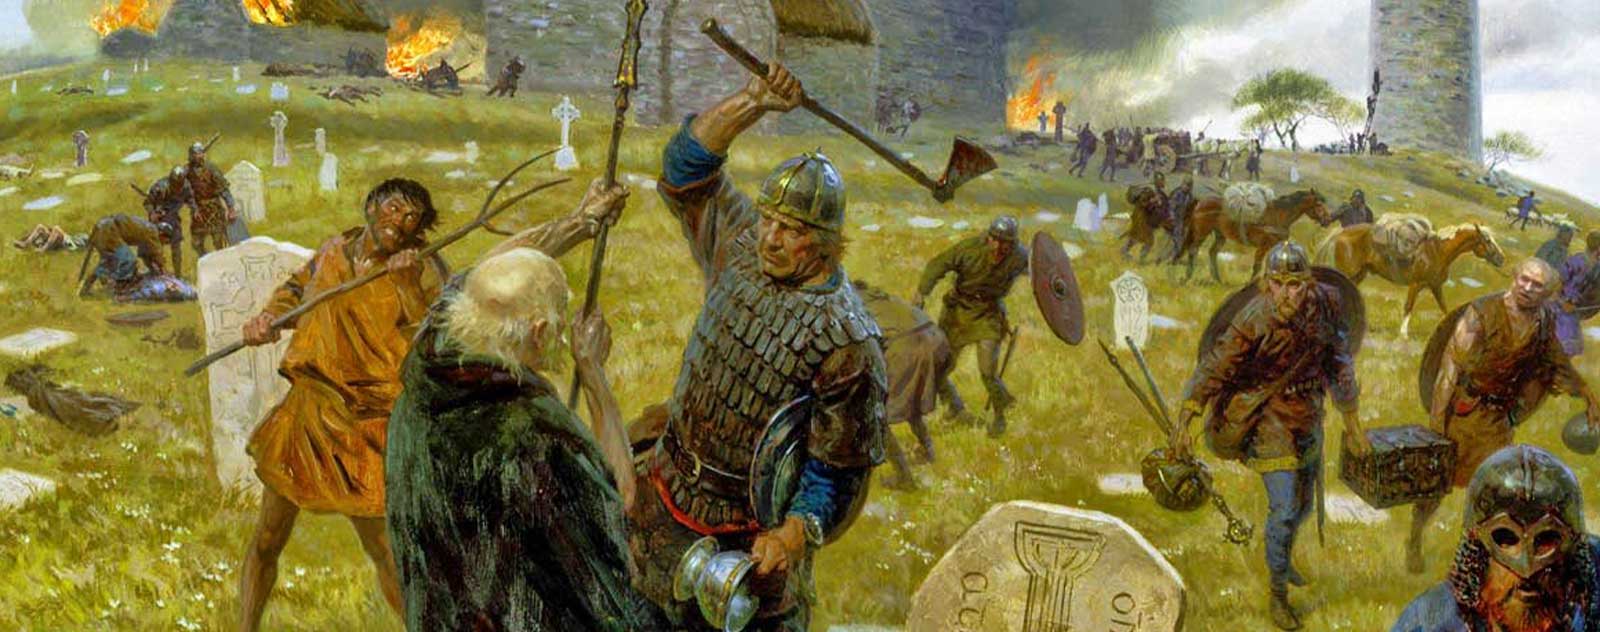 Invasion der Wikinger in Lindisfarne